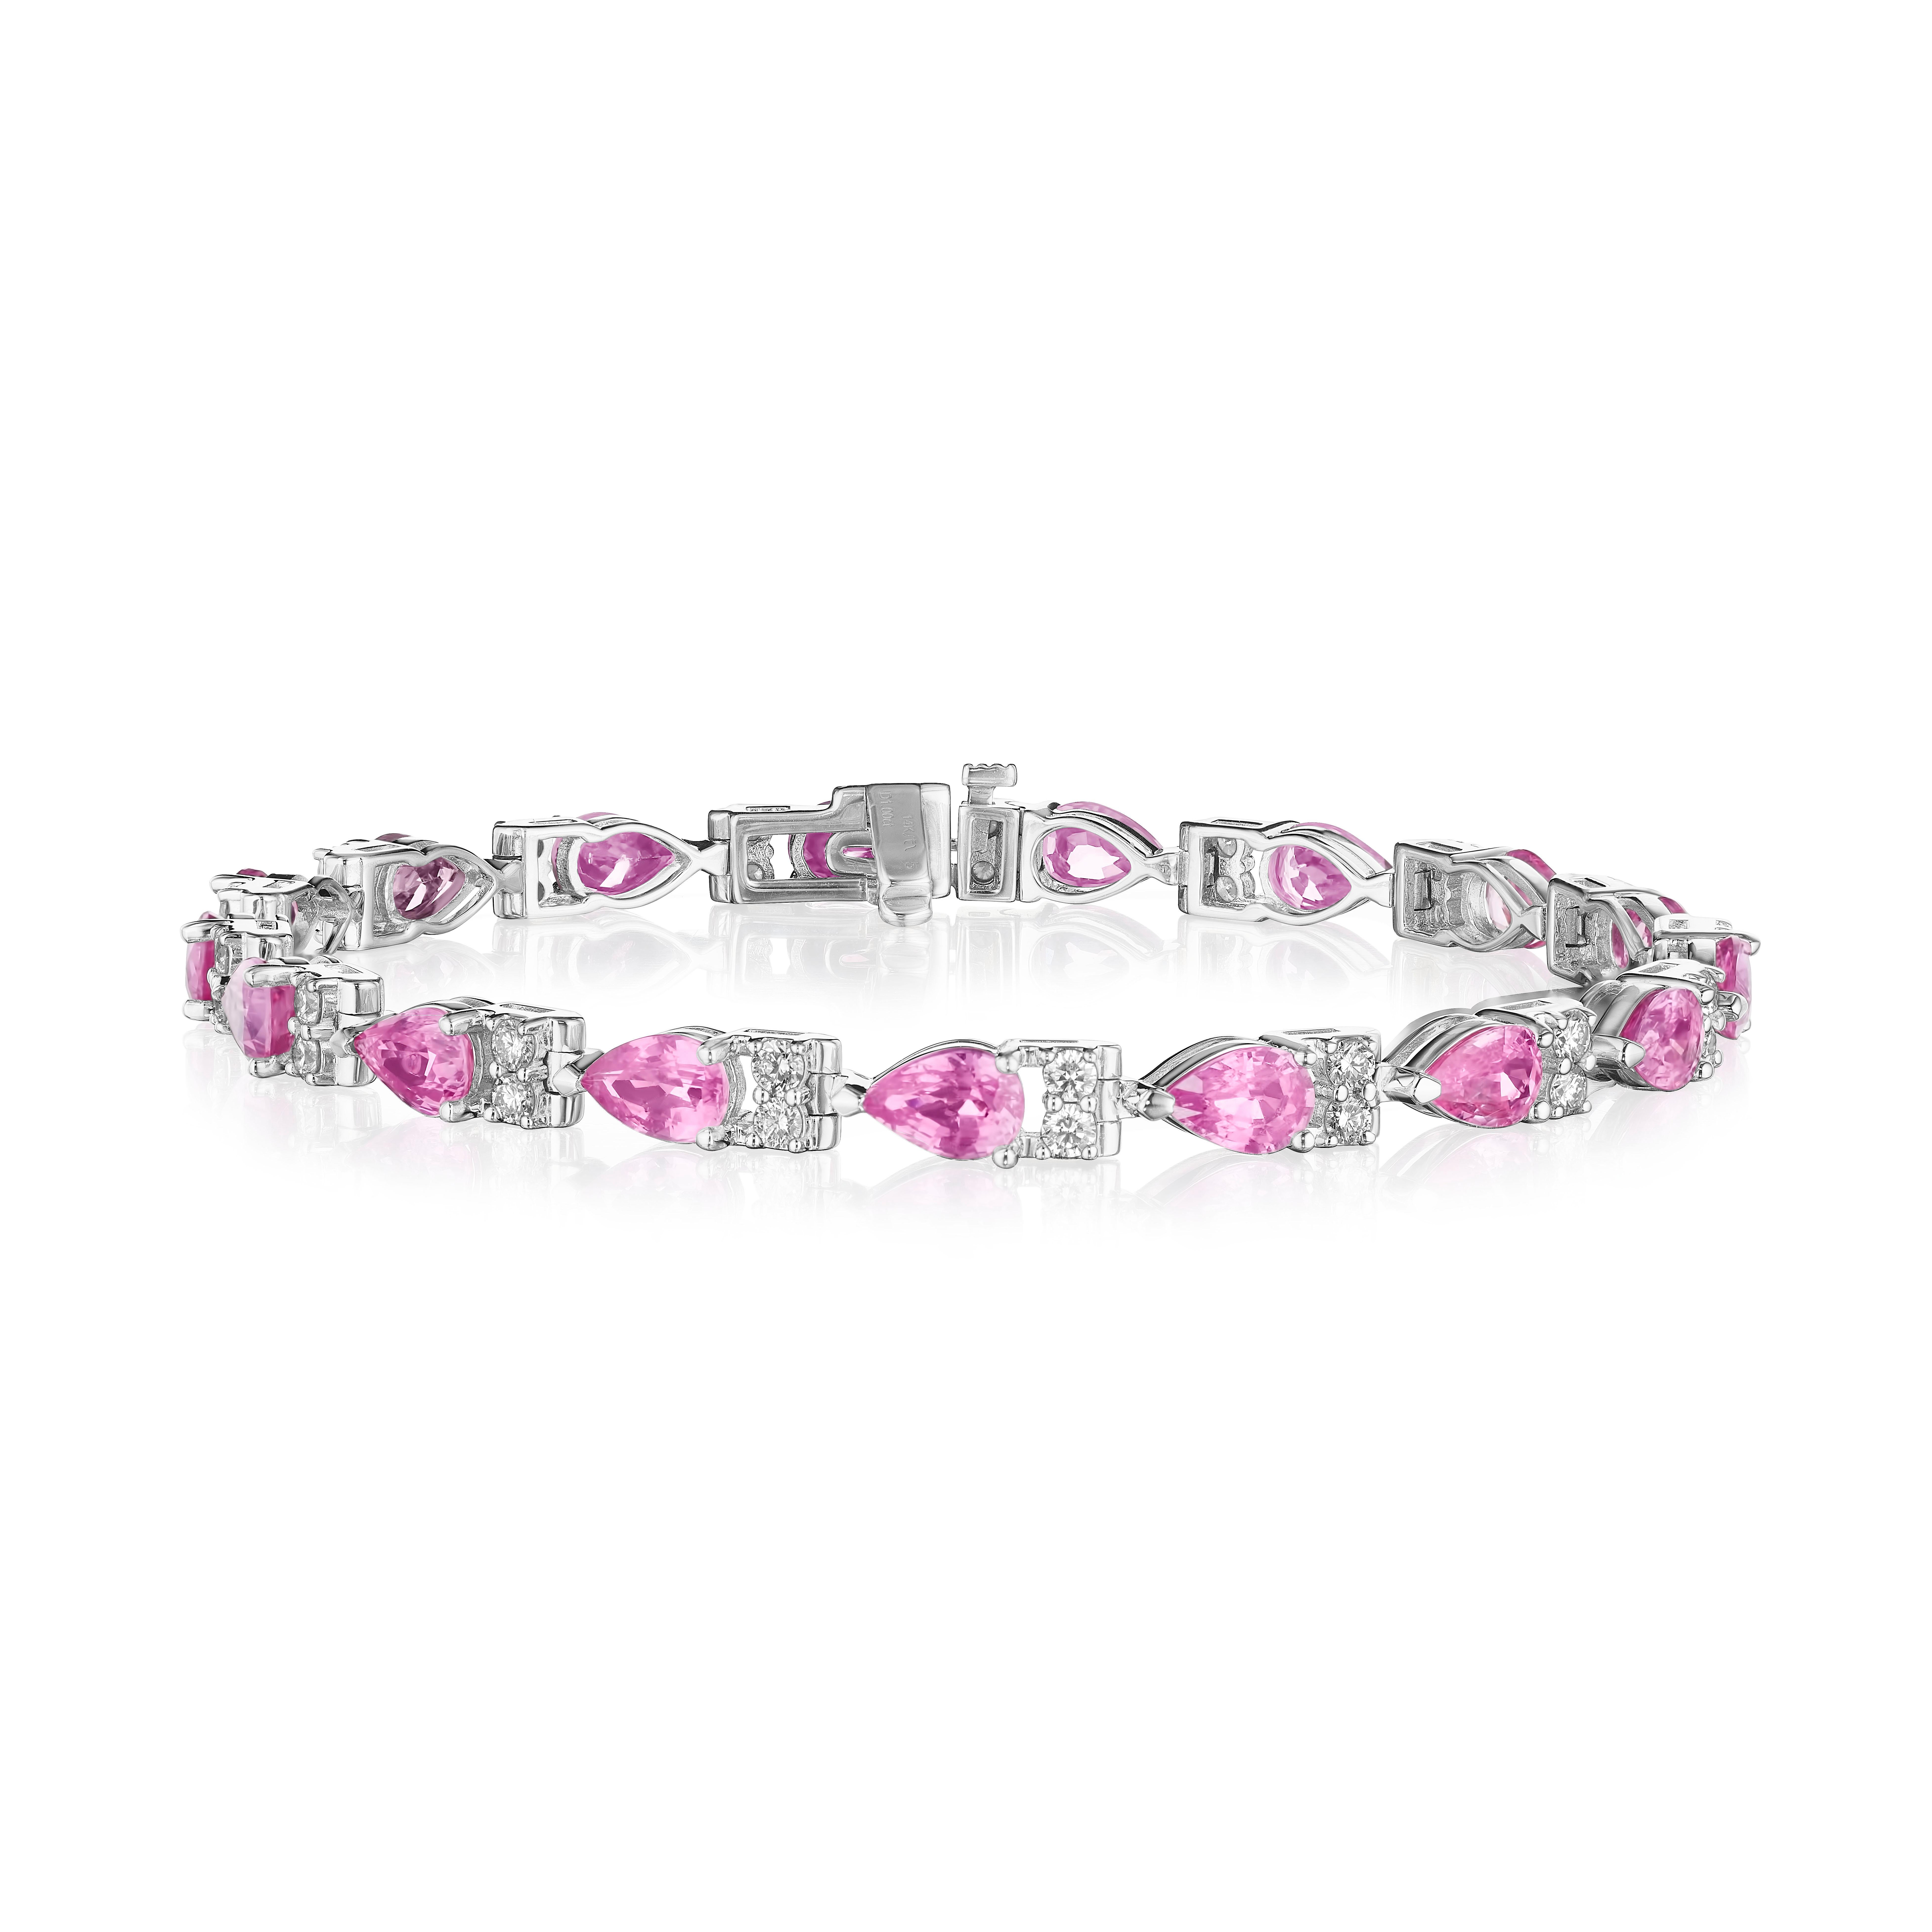 - • Eine wunderschöne Reihe von rosafarbenen birnenförmigen Saphiren und weißen runden Diamanten im Brillantschliff umgibt das Handgelenk in diesem Armband, das in 14KT Gold gefasst ist. Das Armband misst 7